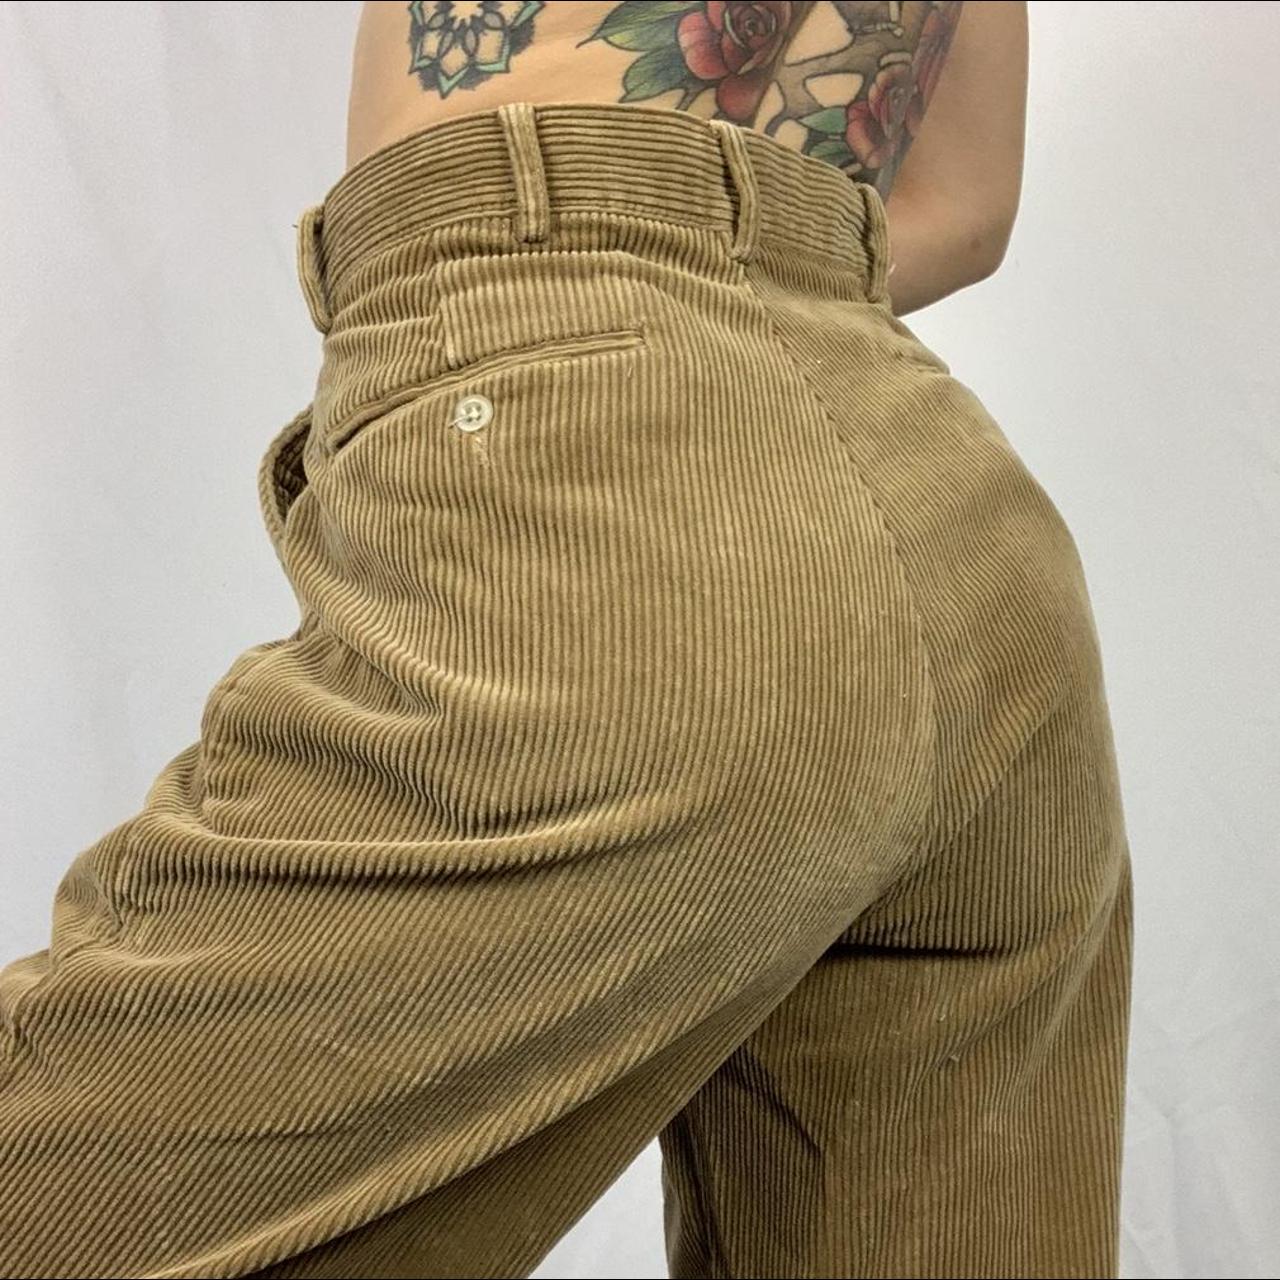 Incredible vintage corduroy pants by Ralph Lauren 🧸 - Depop